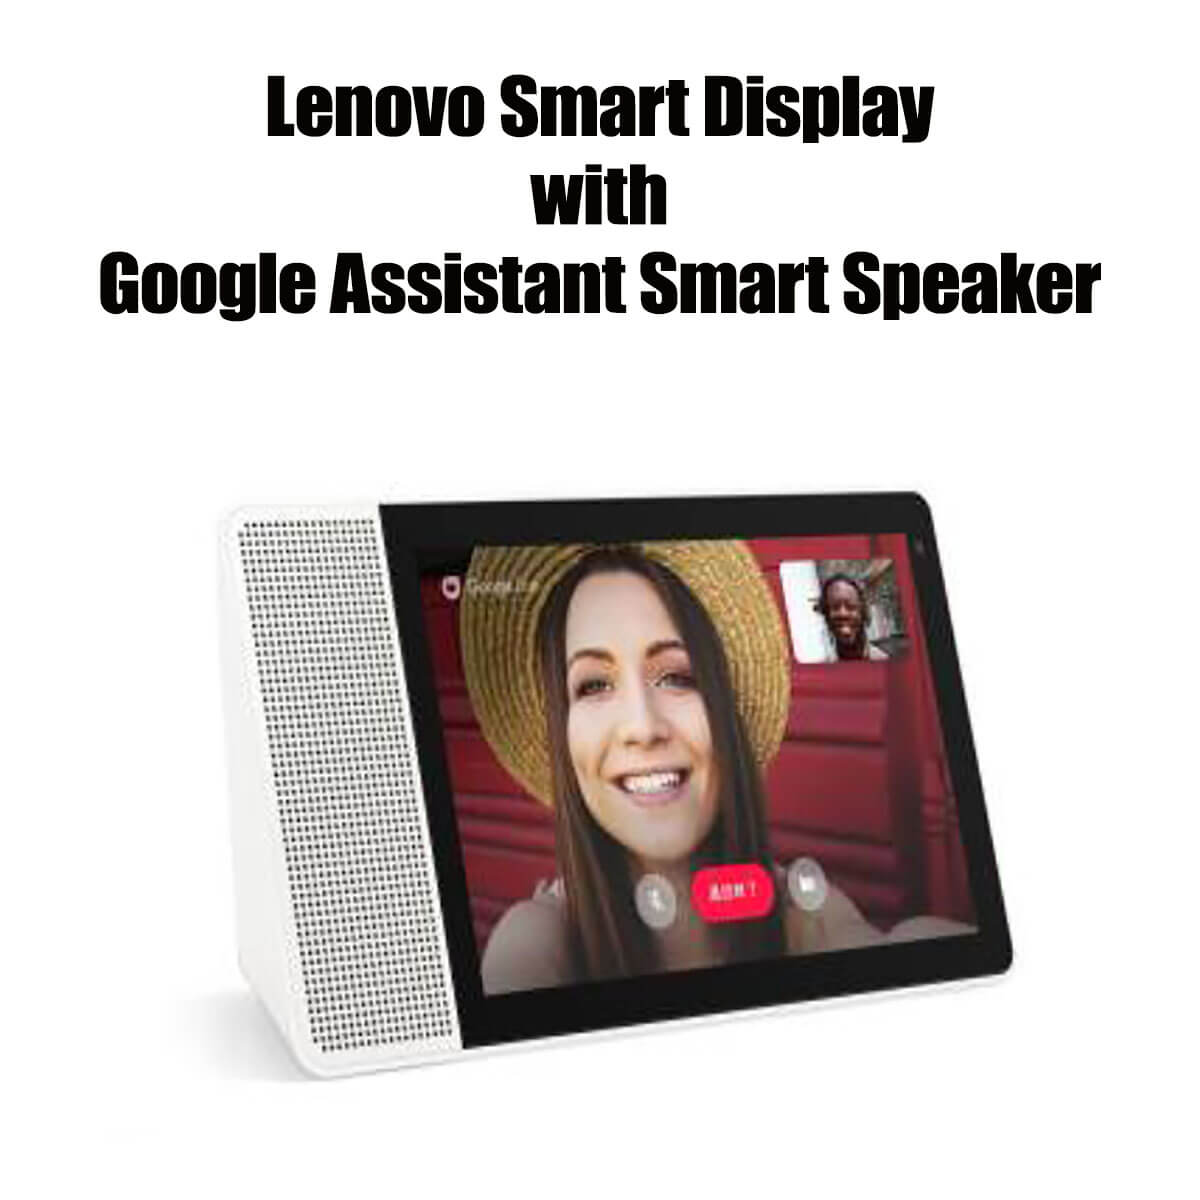 Lenovo-Smart-Display-Img-1200x1200